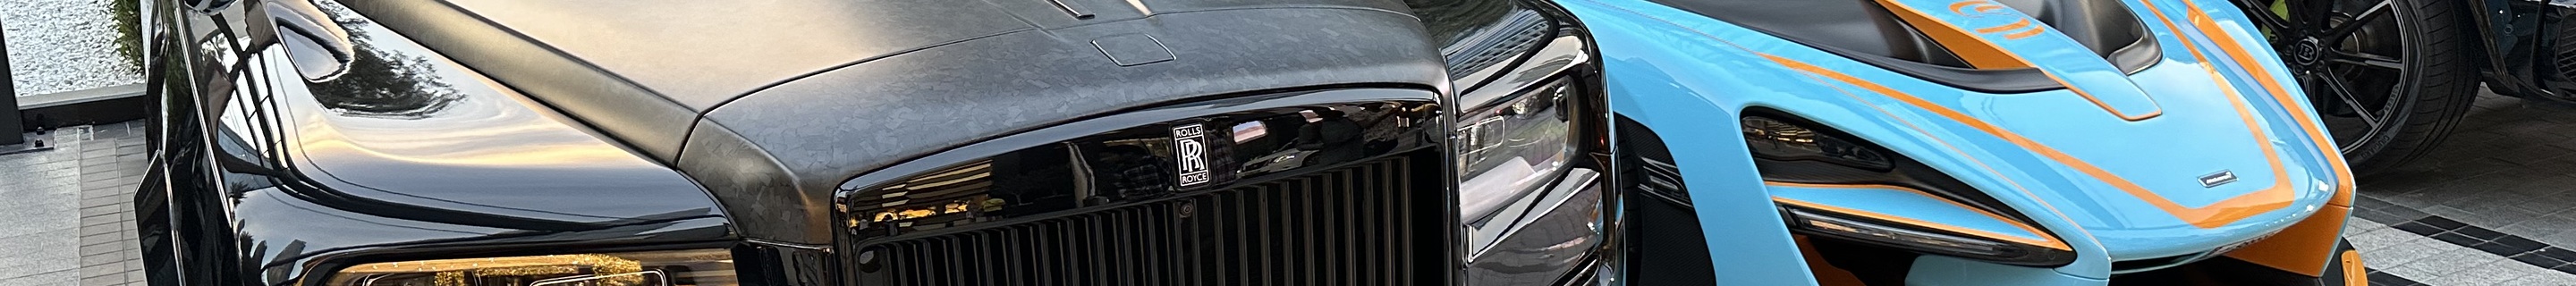 Rolls-Royce Mansory Cullinan Wide Body Billionaire